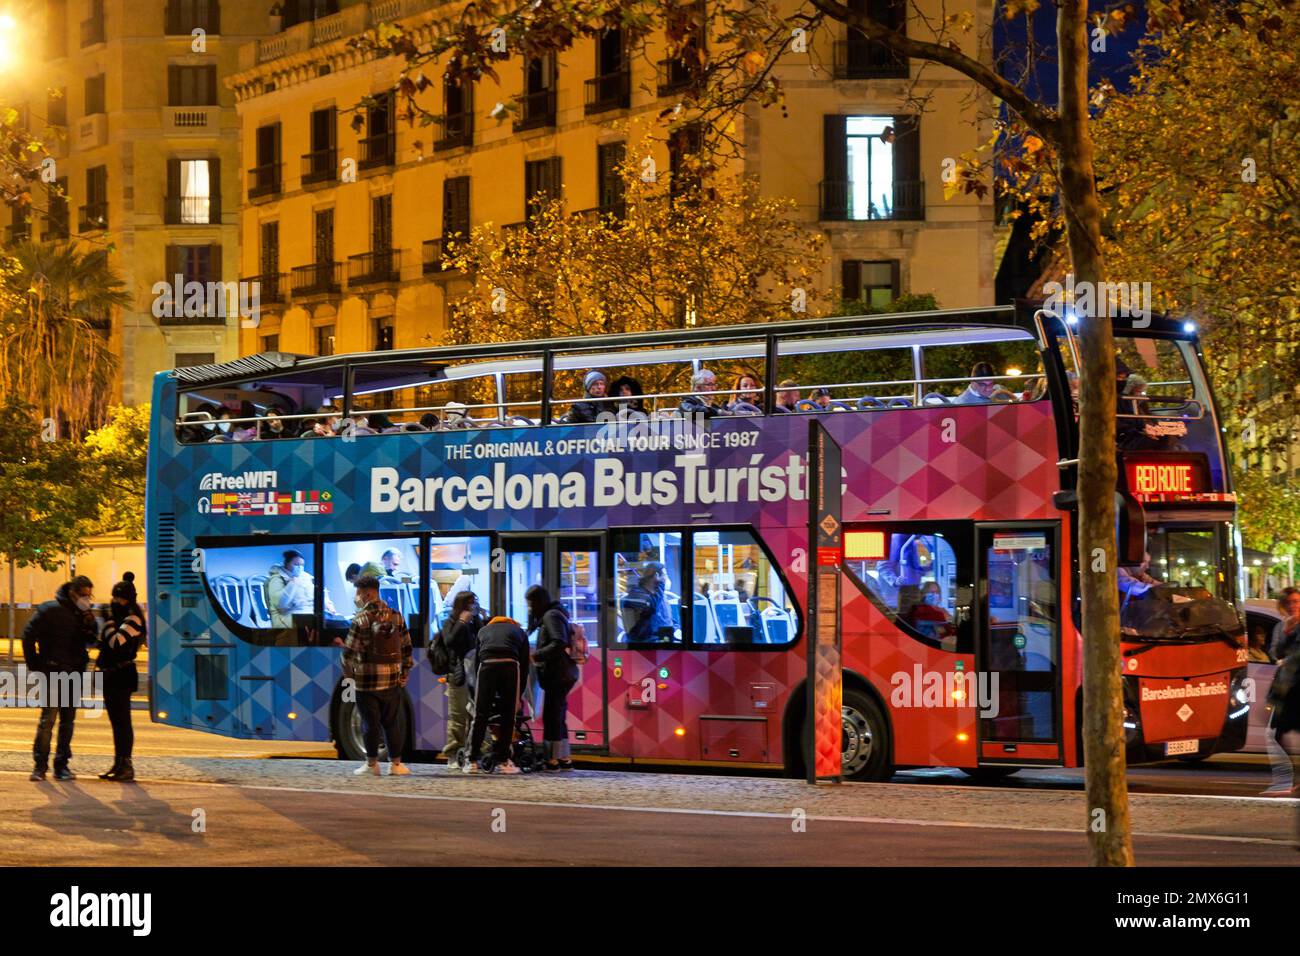 Bus Turistico, Barceloneta, Barcelona, Cataluña, España. El autobús turístico de Barcelona es una excelente manera de explorar Barcelona y sus alrededores Foto de stock